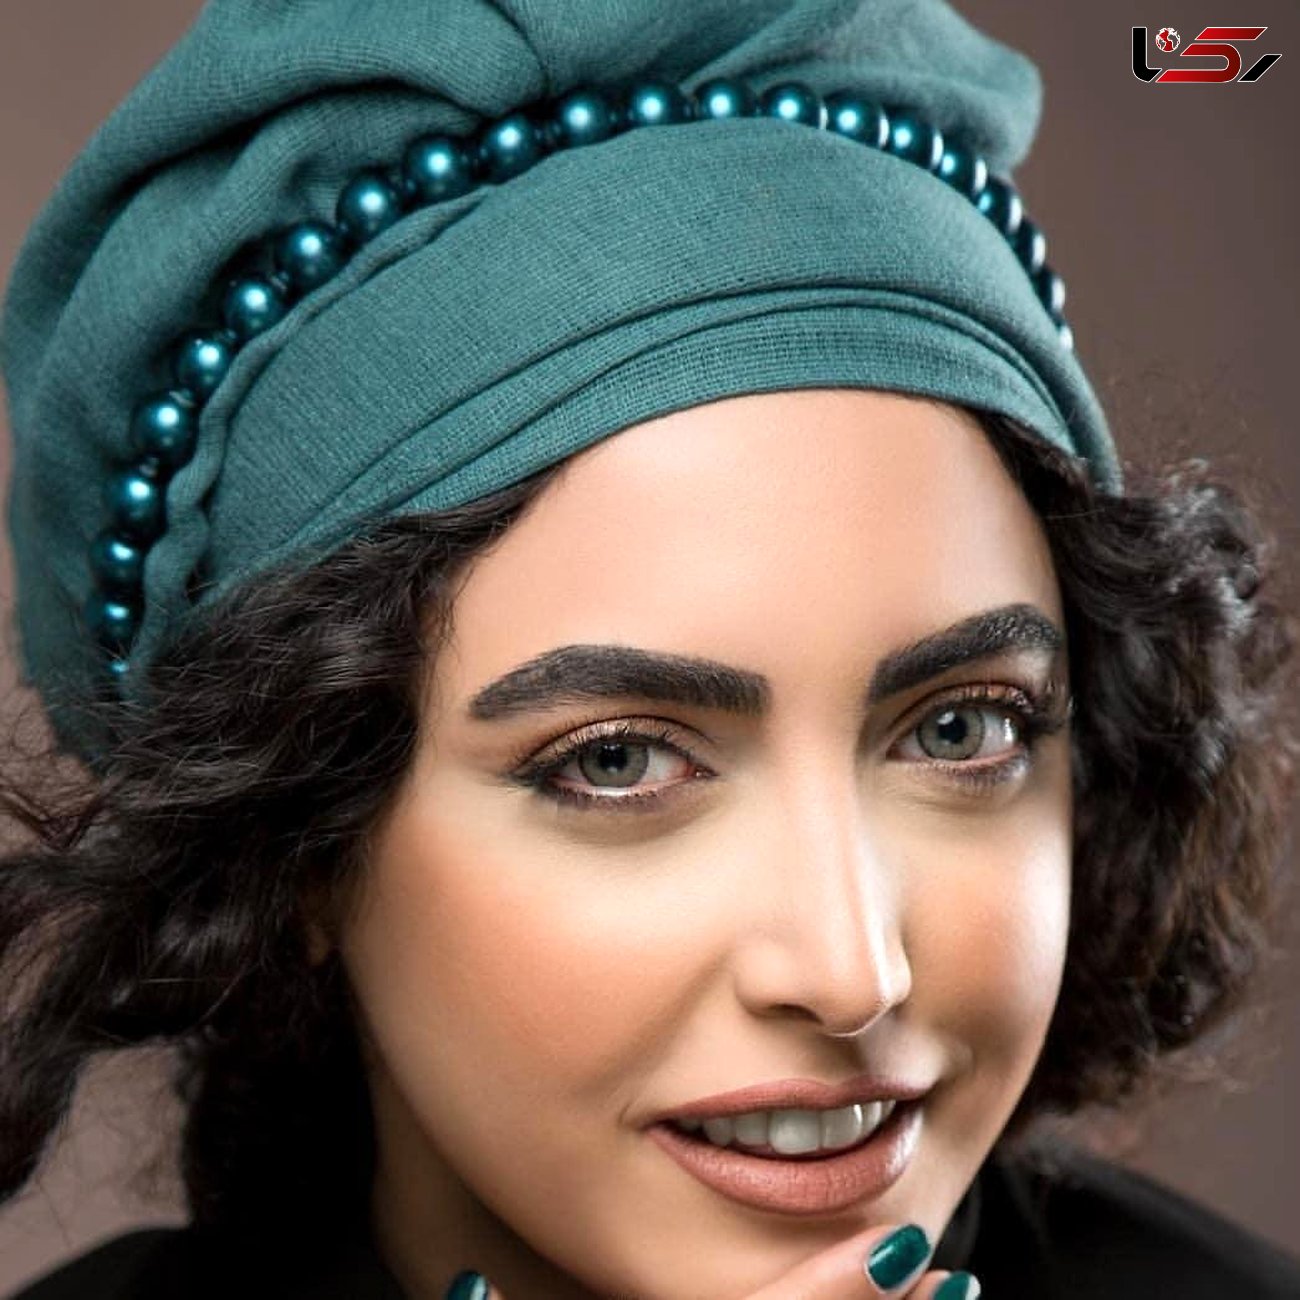 کشف حجاب و لباس خانم بازیگر  سریال لیسانسیه ها  / خداحافظی از بازیگری  ساناز طاری + عکس ها